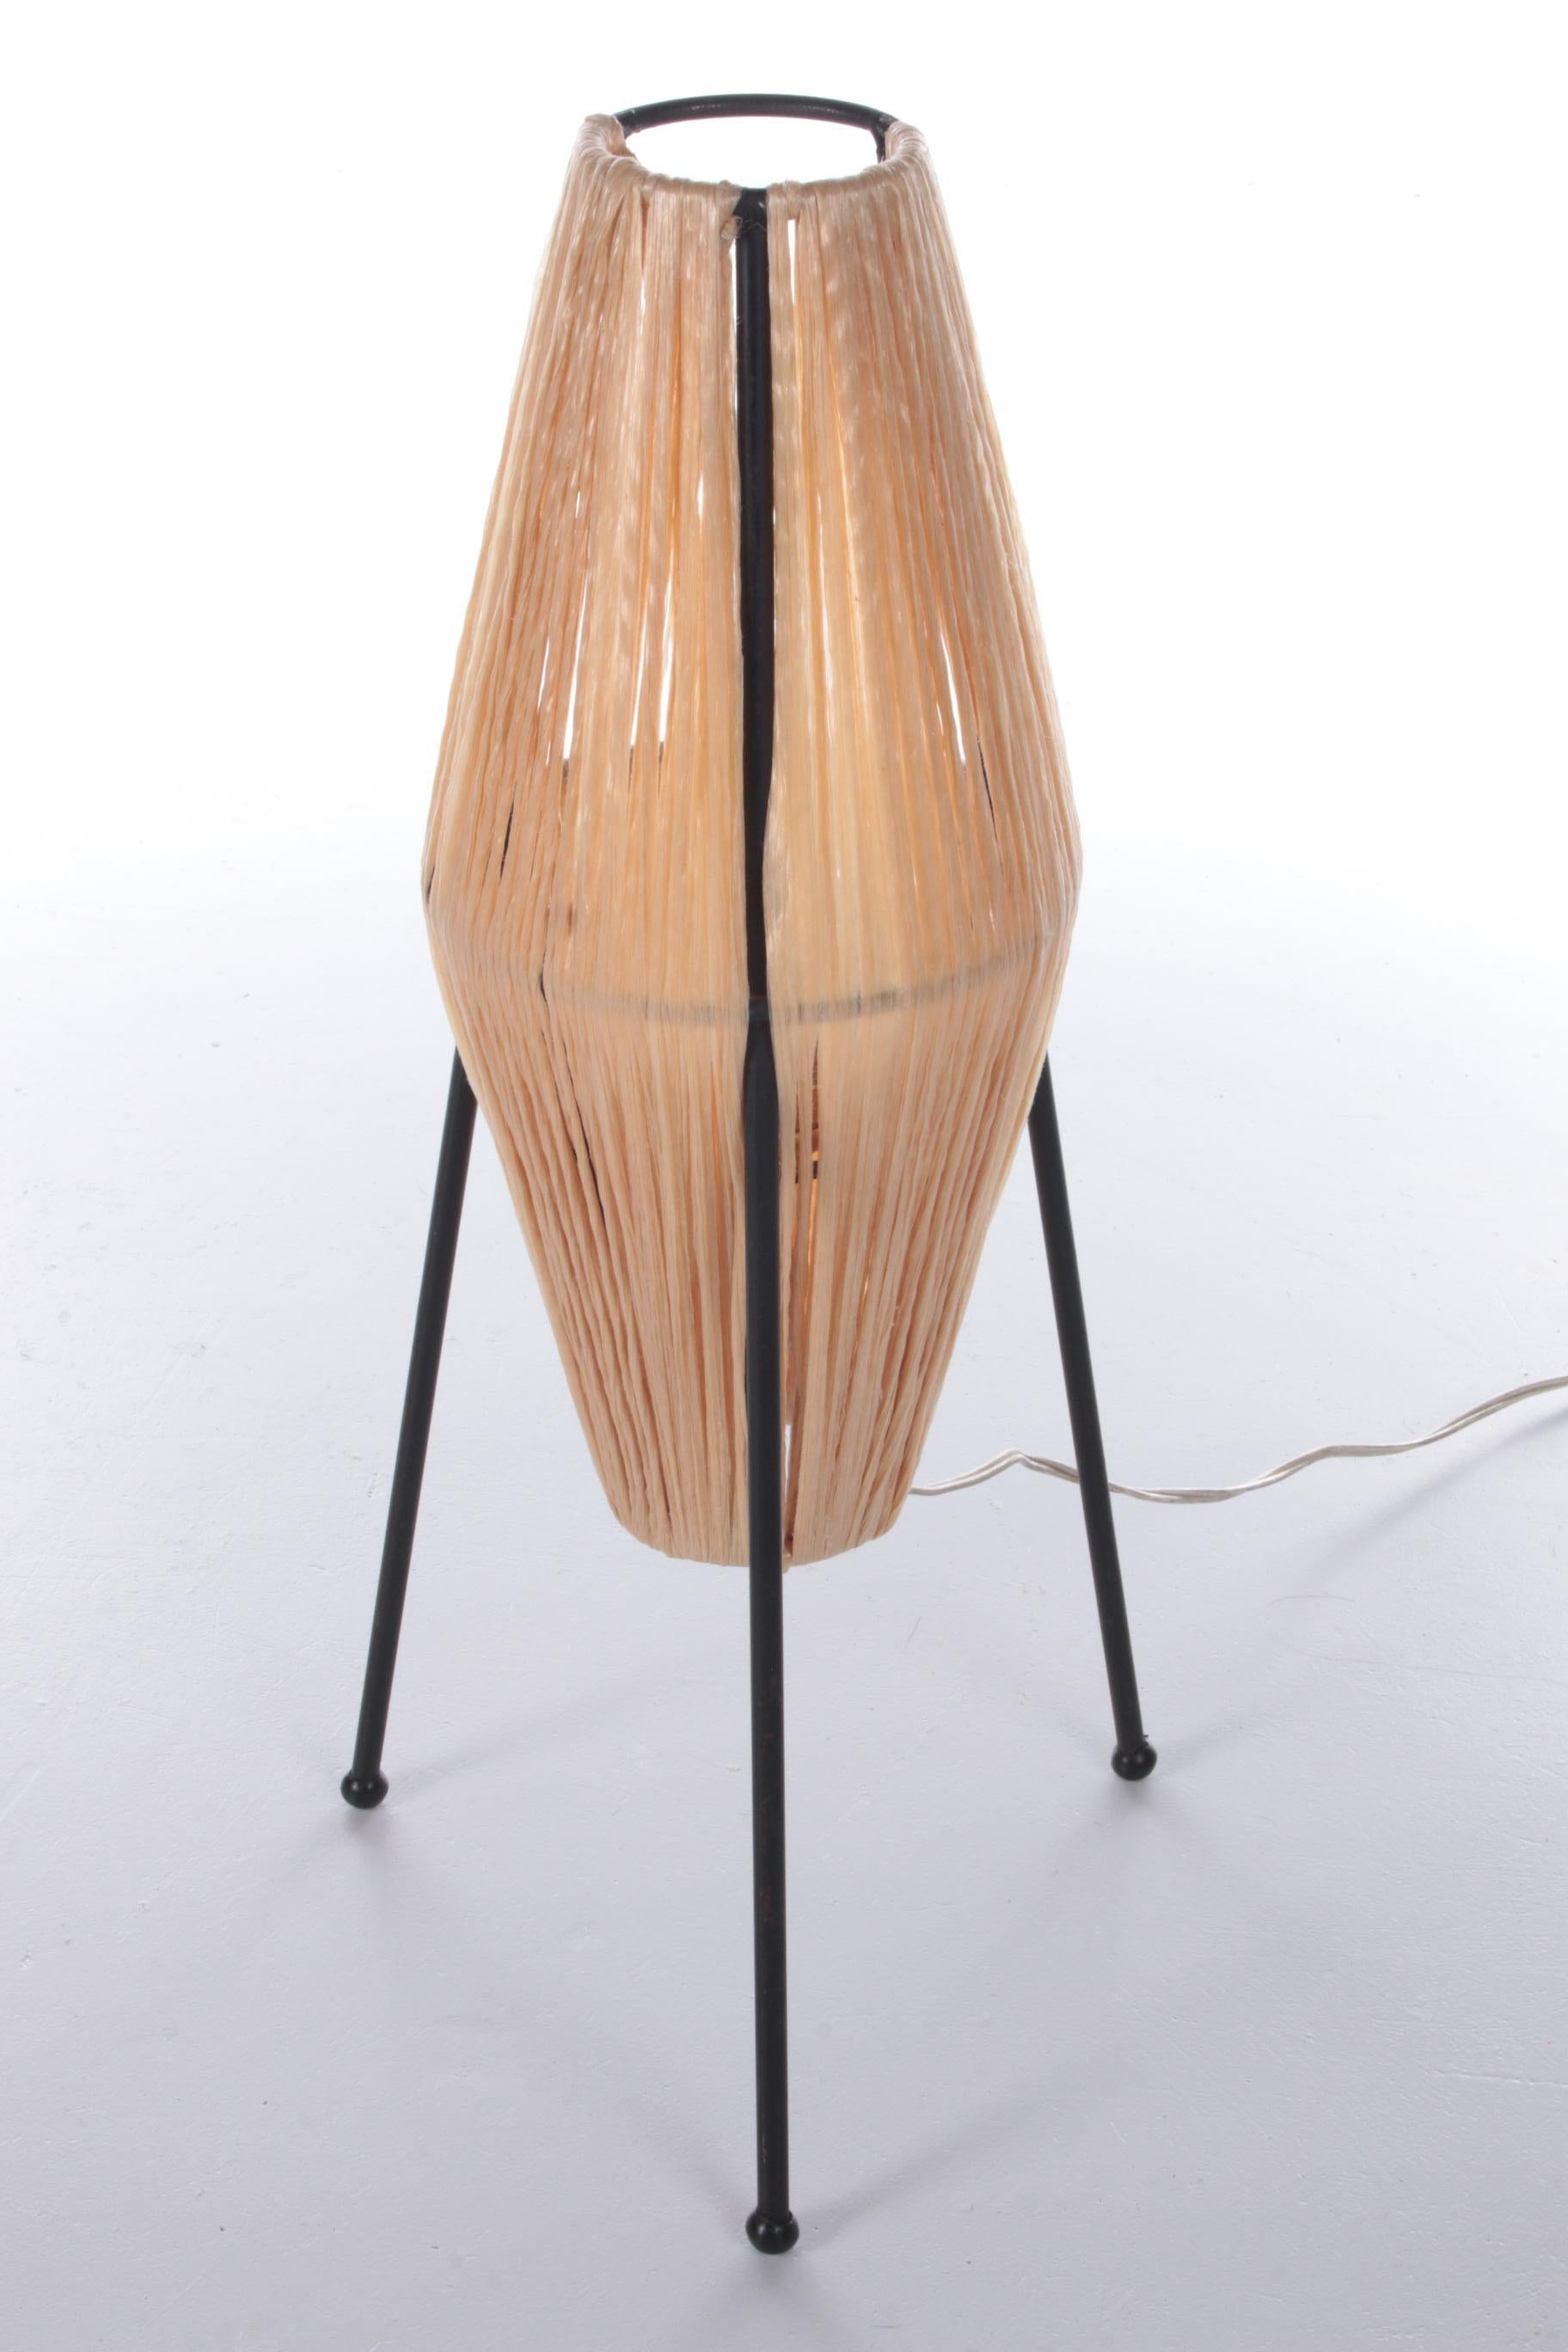 Lampe de table vintage avec sissal sur trépied, 1960


Belle lampe de table sur un trépied en métal tressé avec du sissal.

Un bel exemple de câblage vient de France.

S'il vous manque un point lumineux pour l'ambiance, voici une belle lampe